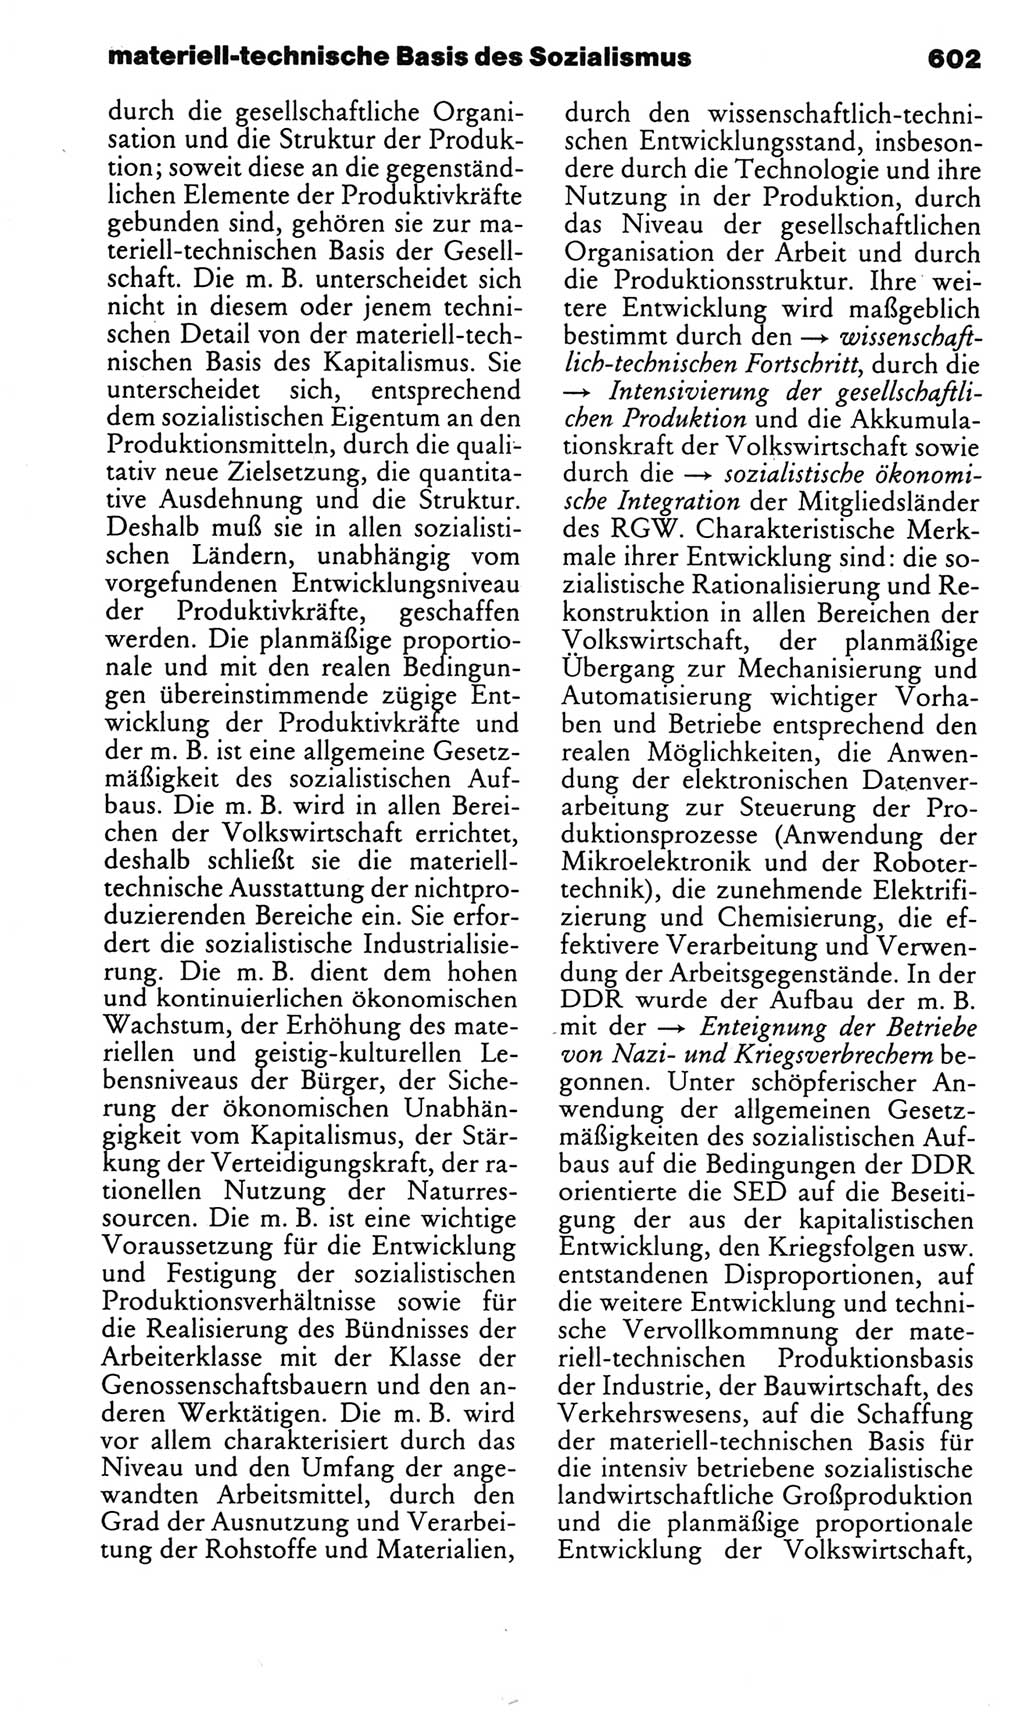 Kleines politisches Wörterbuch [Deutsche Demokratische Republik (DDR)] 1983, Seite 602 (Kl. pol. Wb. DDR 1983, S. 602)